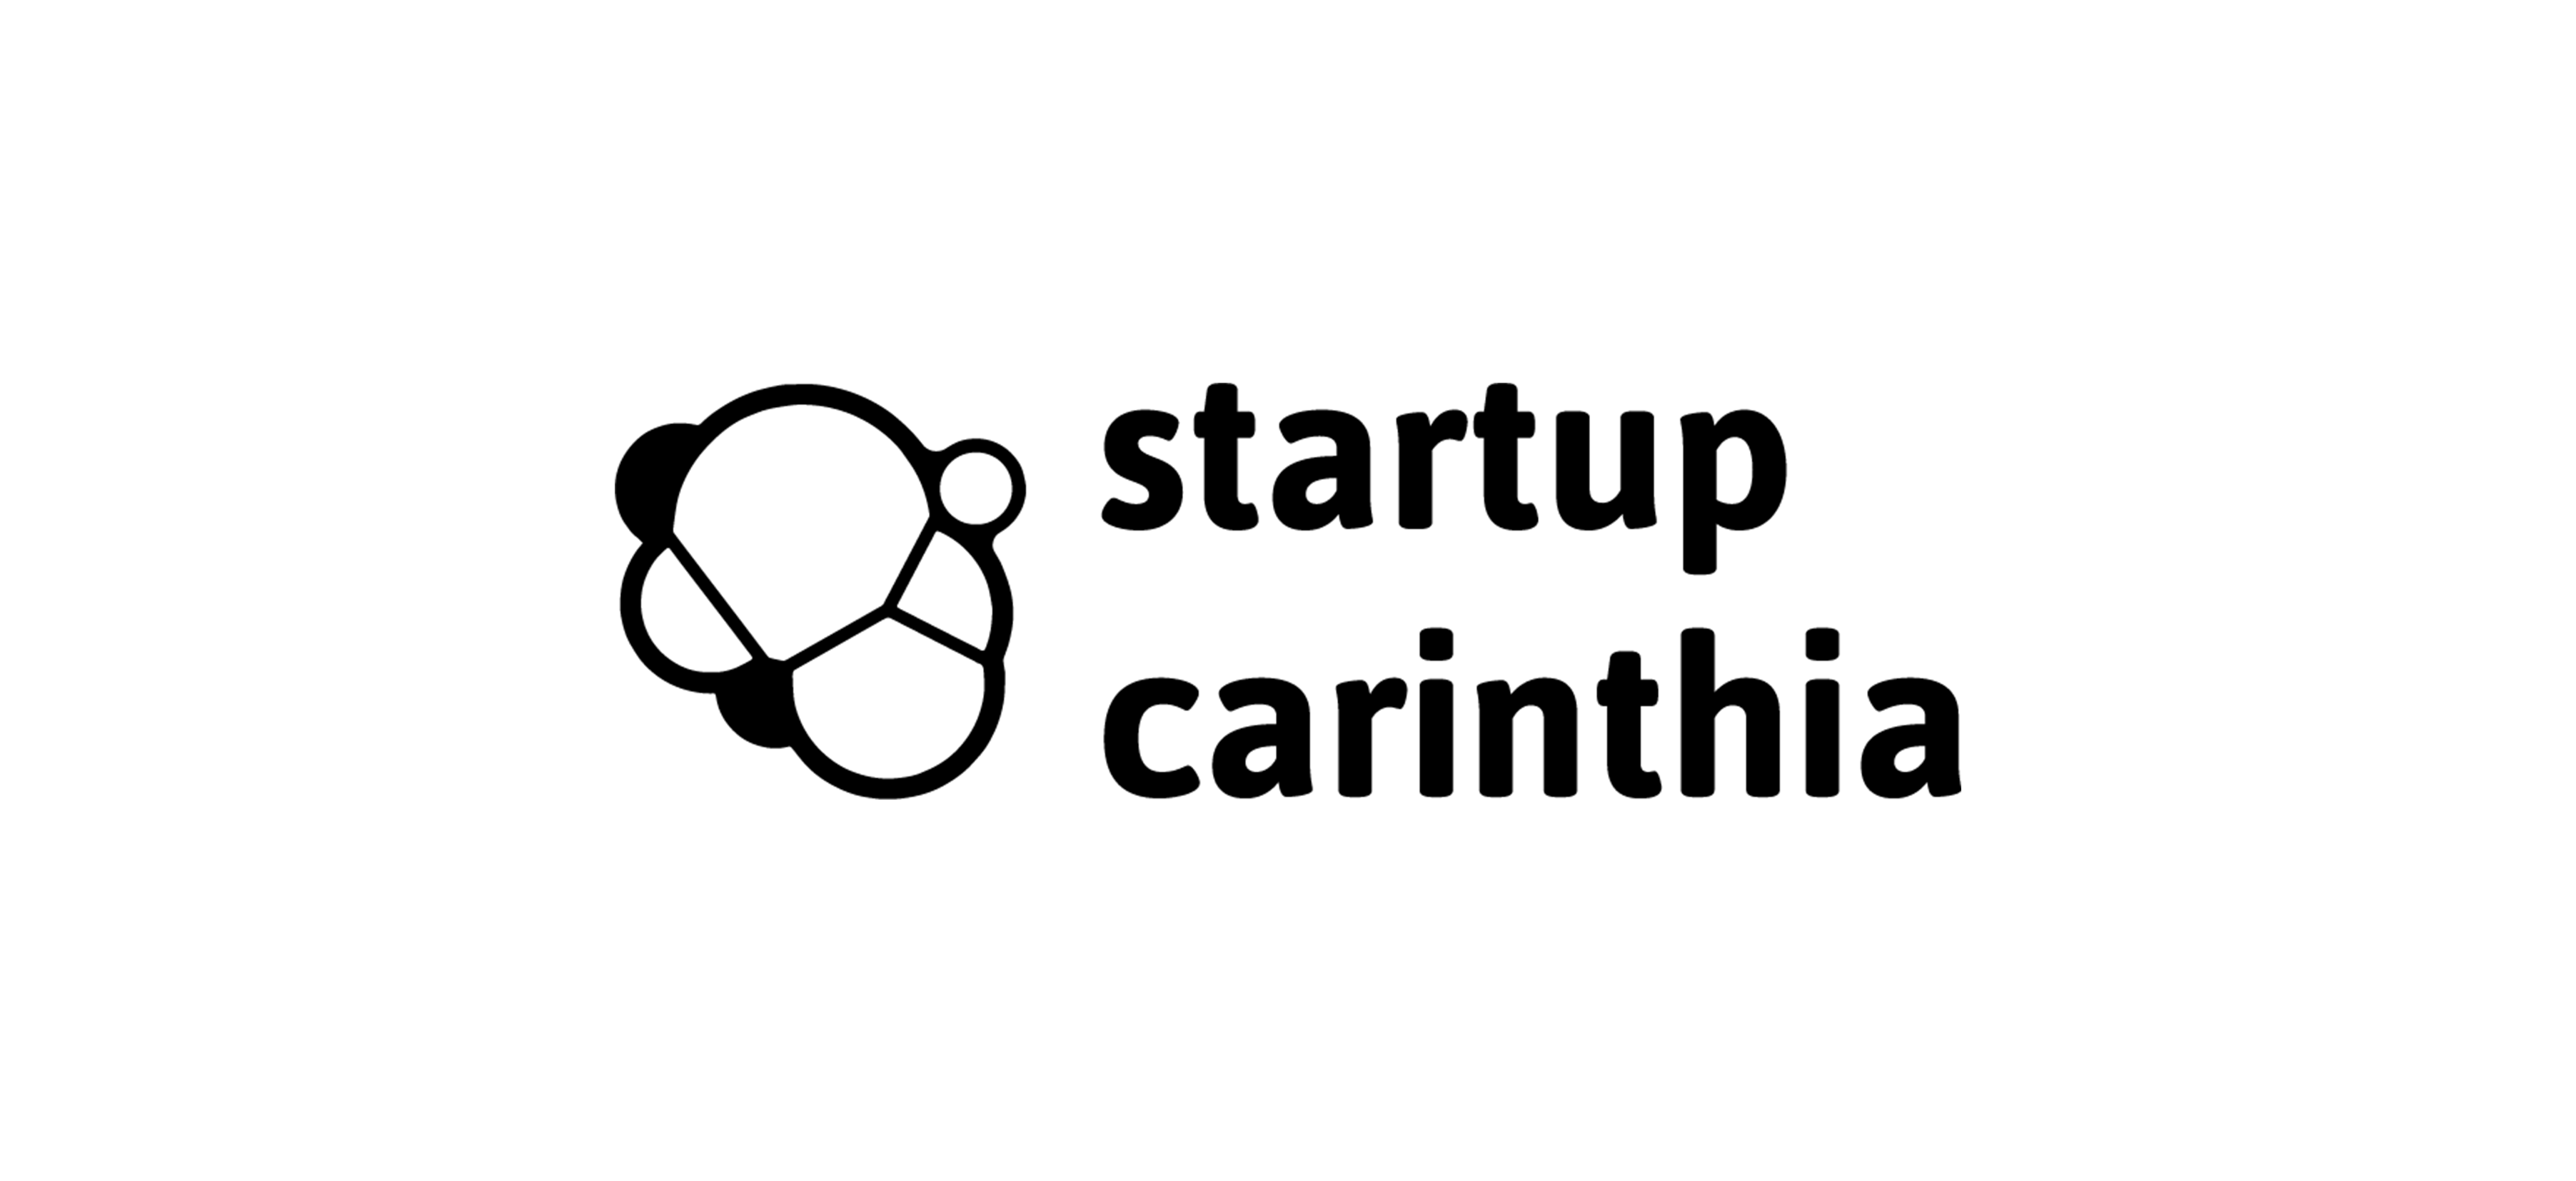 startup-carinthia-logo-hg